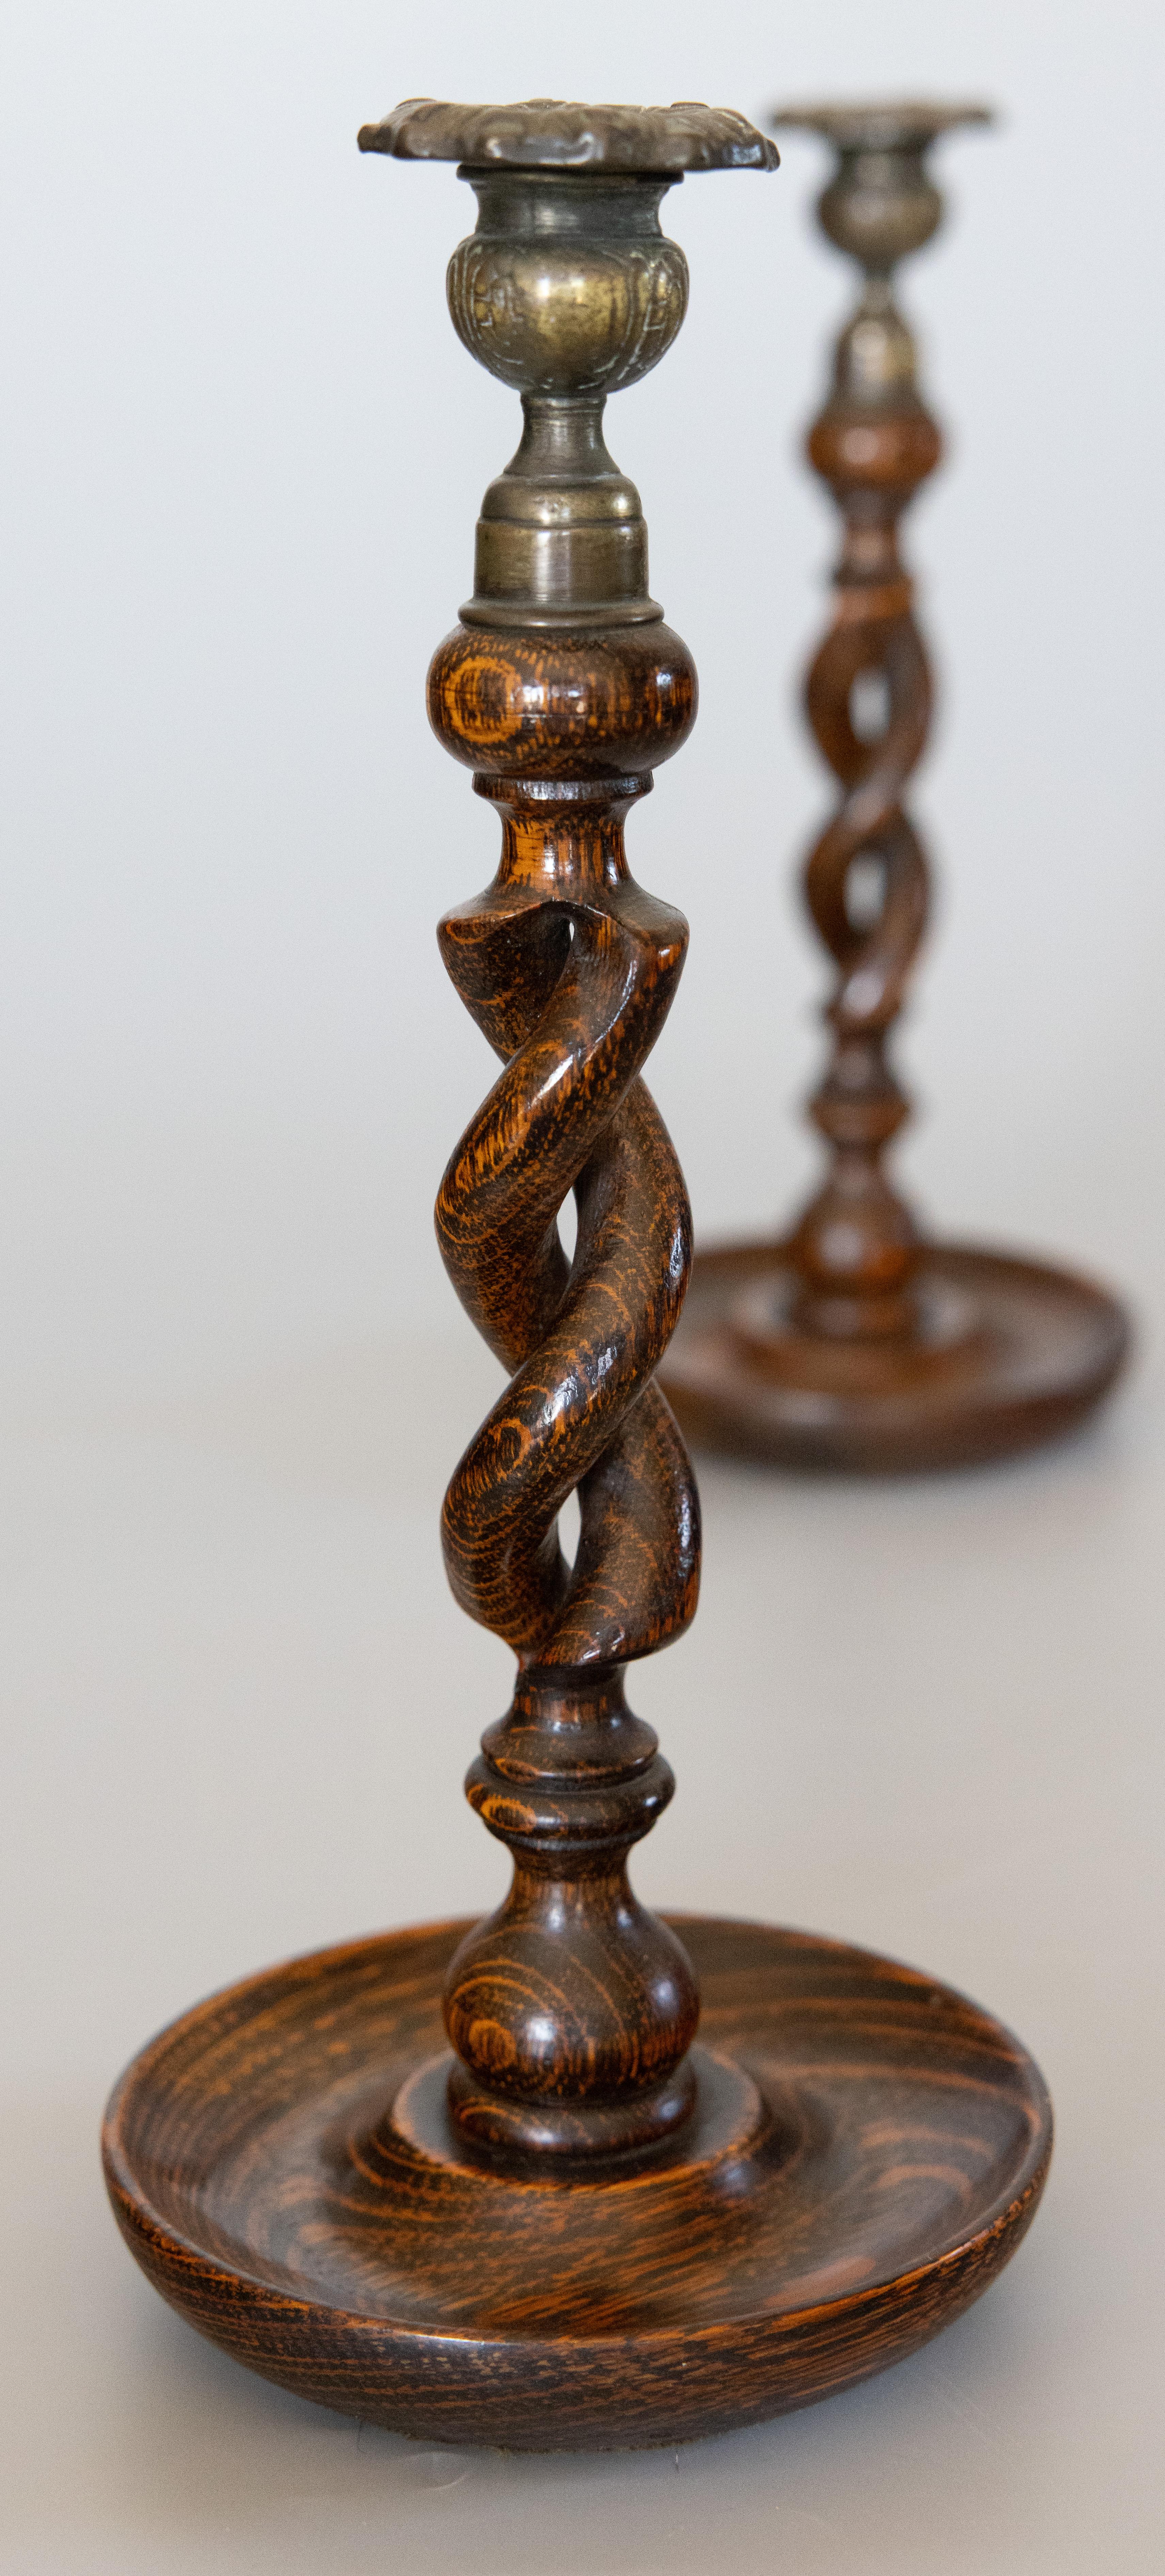 Paire de bougeoirs en chêne tigré et laiton, vers 1900. Cette magnifique paire est composée de chandeliers en laiton coulé à la main et de tiges torsadées en orge sculptées à la main sur des bases tournées à la main avec un grain richement figuré et